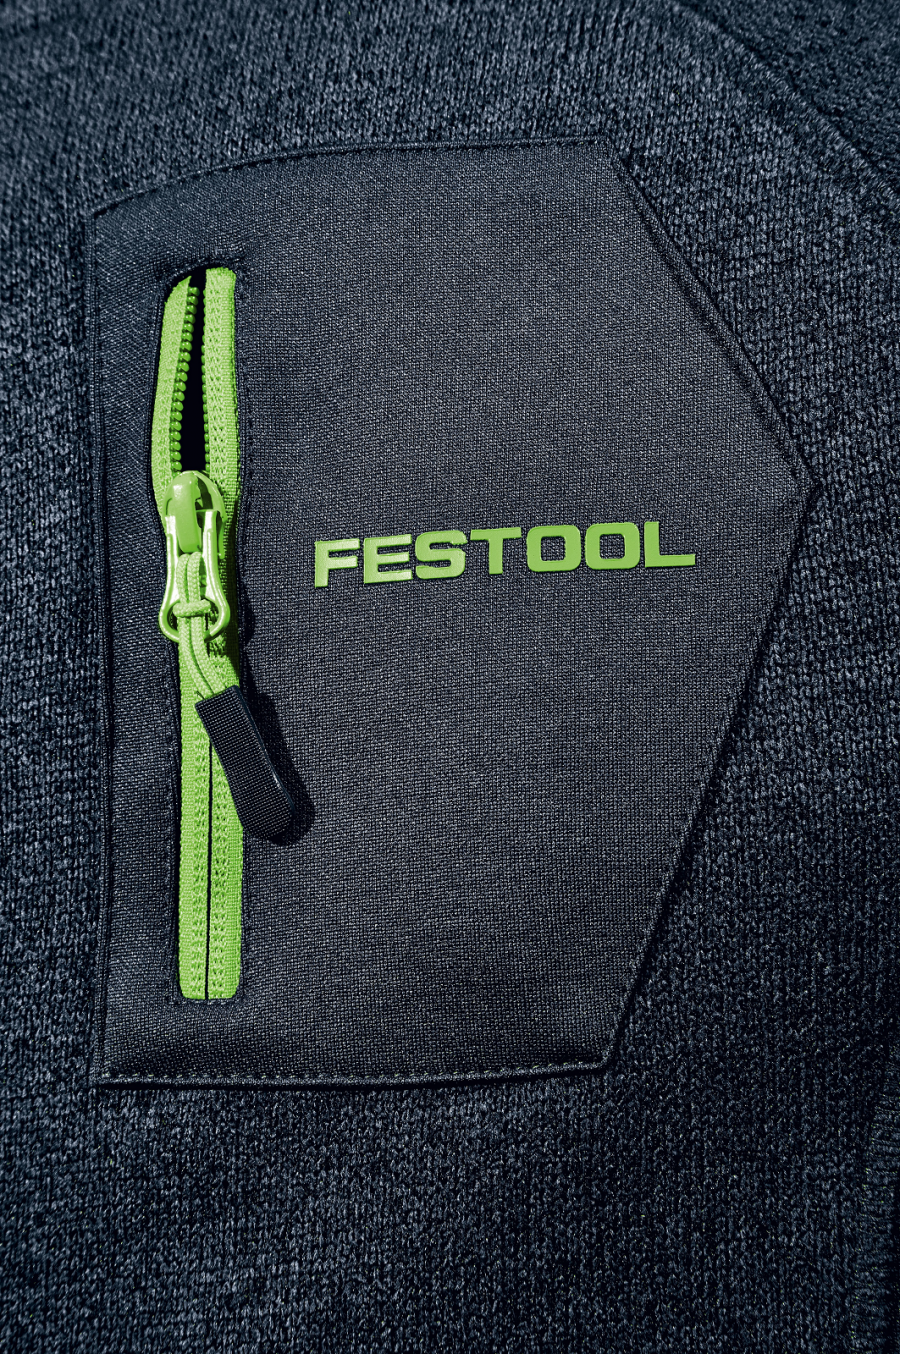 Festool-Fanartikel Sweatjacke